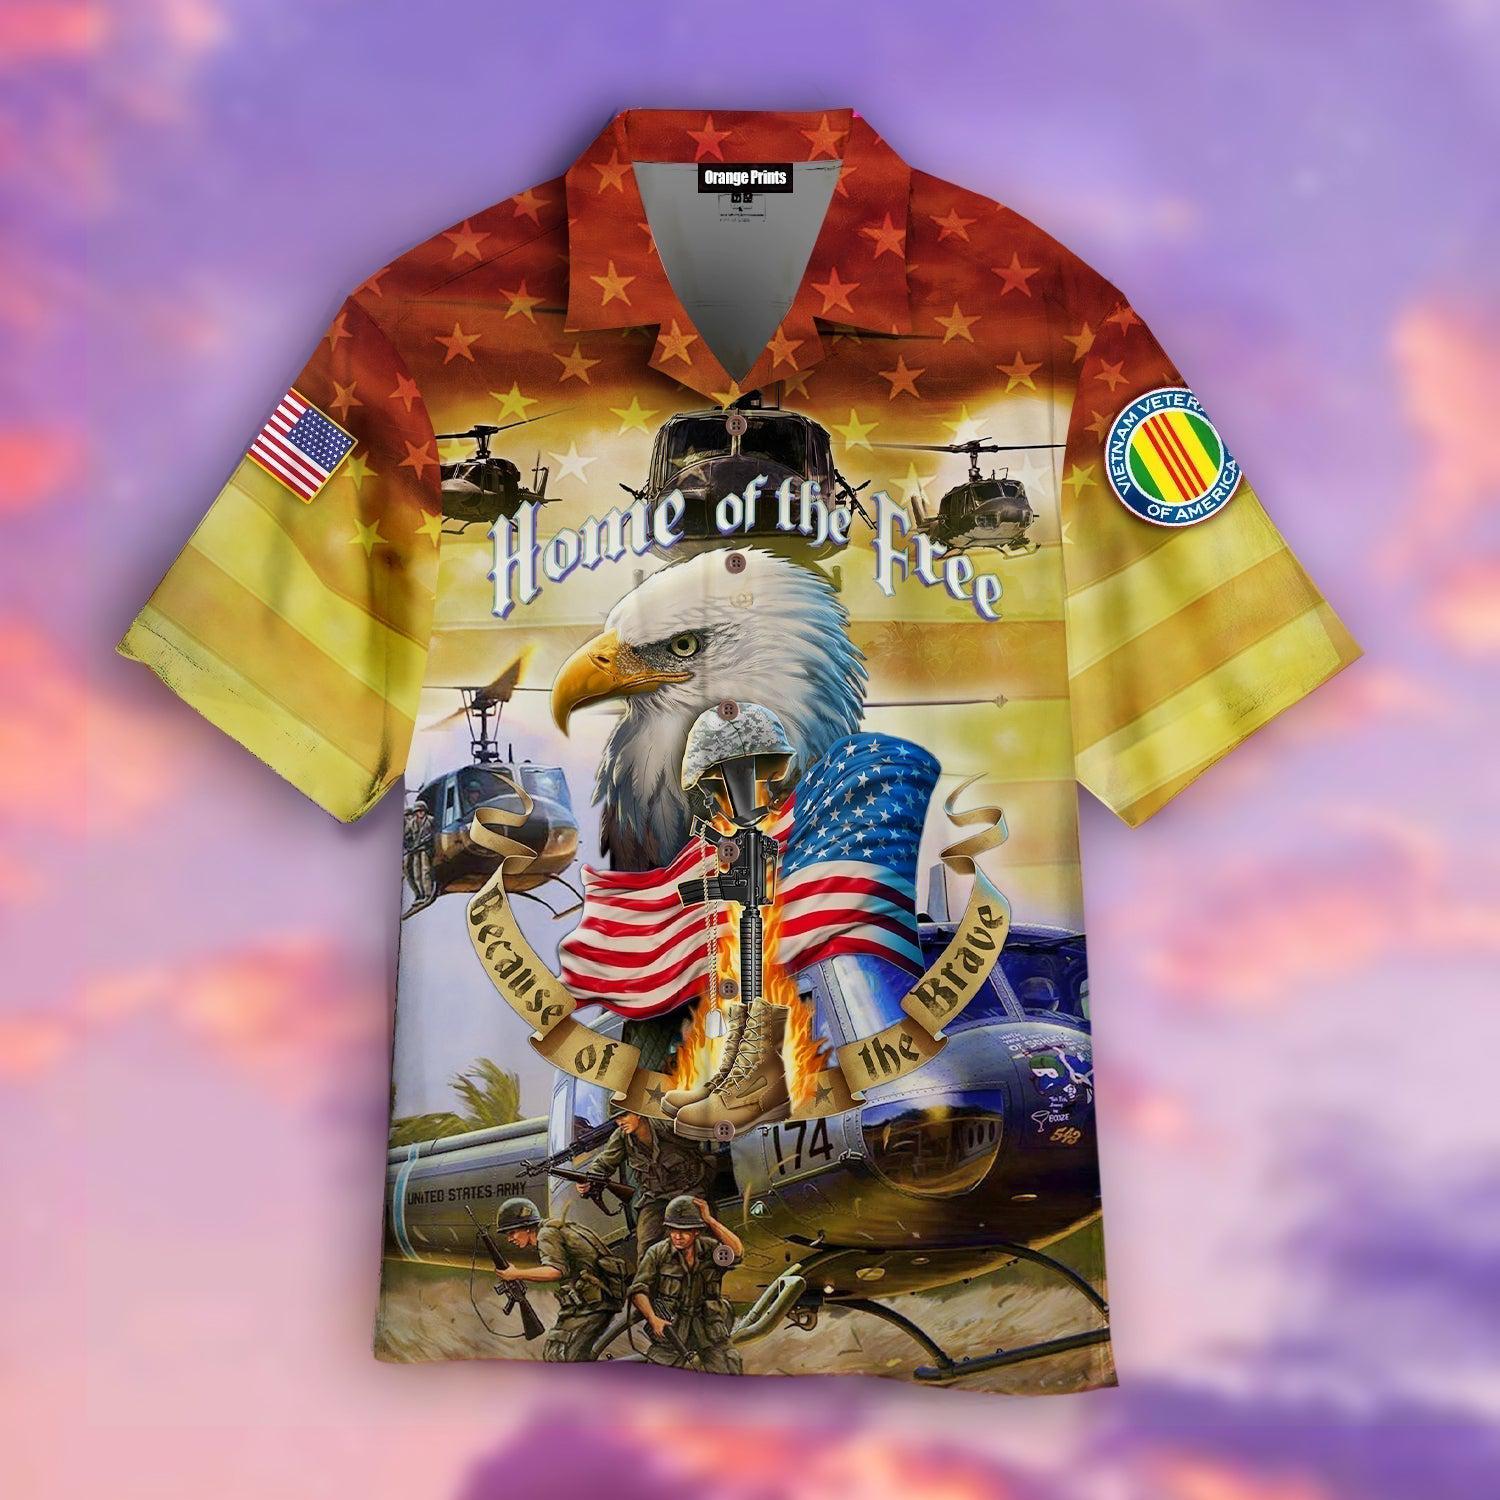 vietnam-veteran-hawaiian-shirt